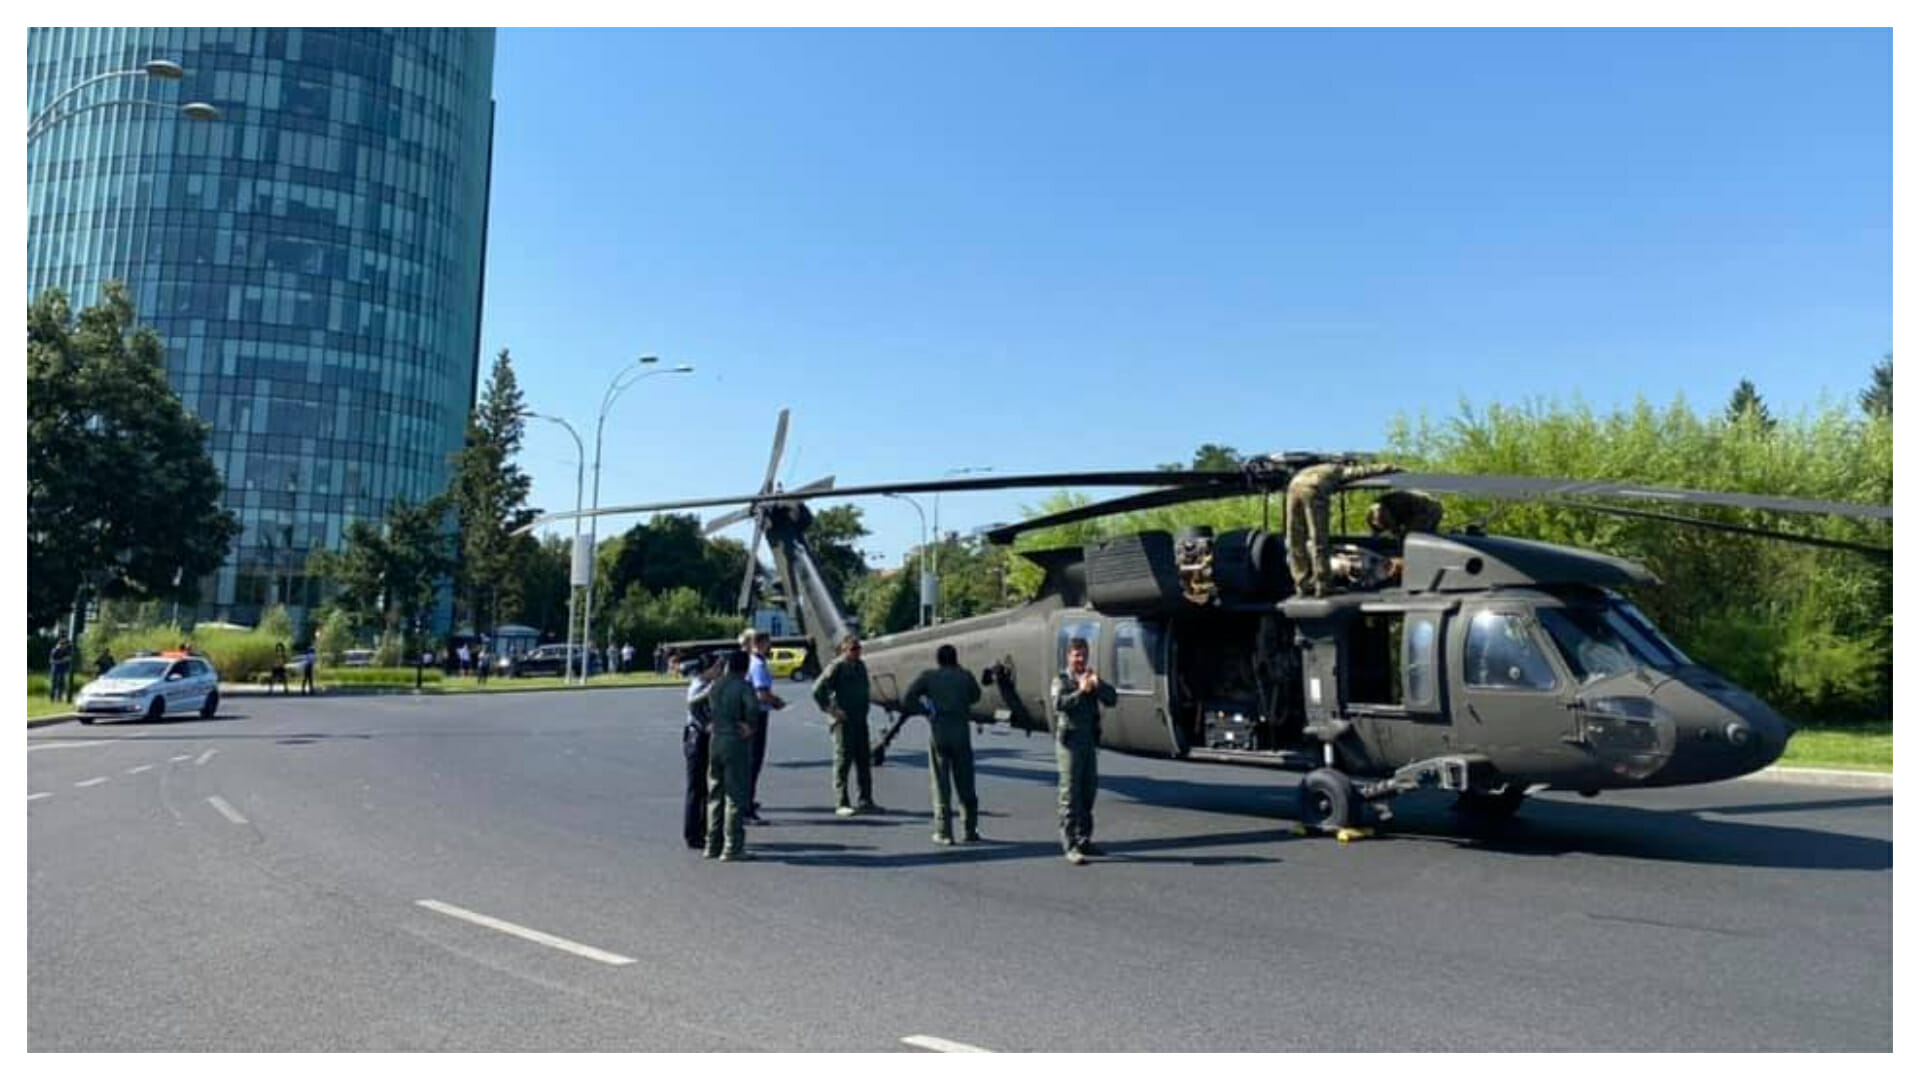 Filmare SPECTACULOASĂ! Elicopterul american a zburat la nivelul clădirilor din București